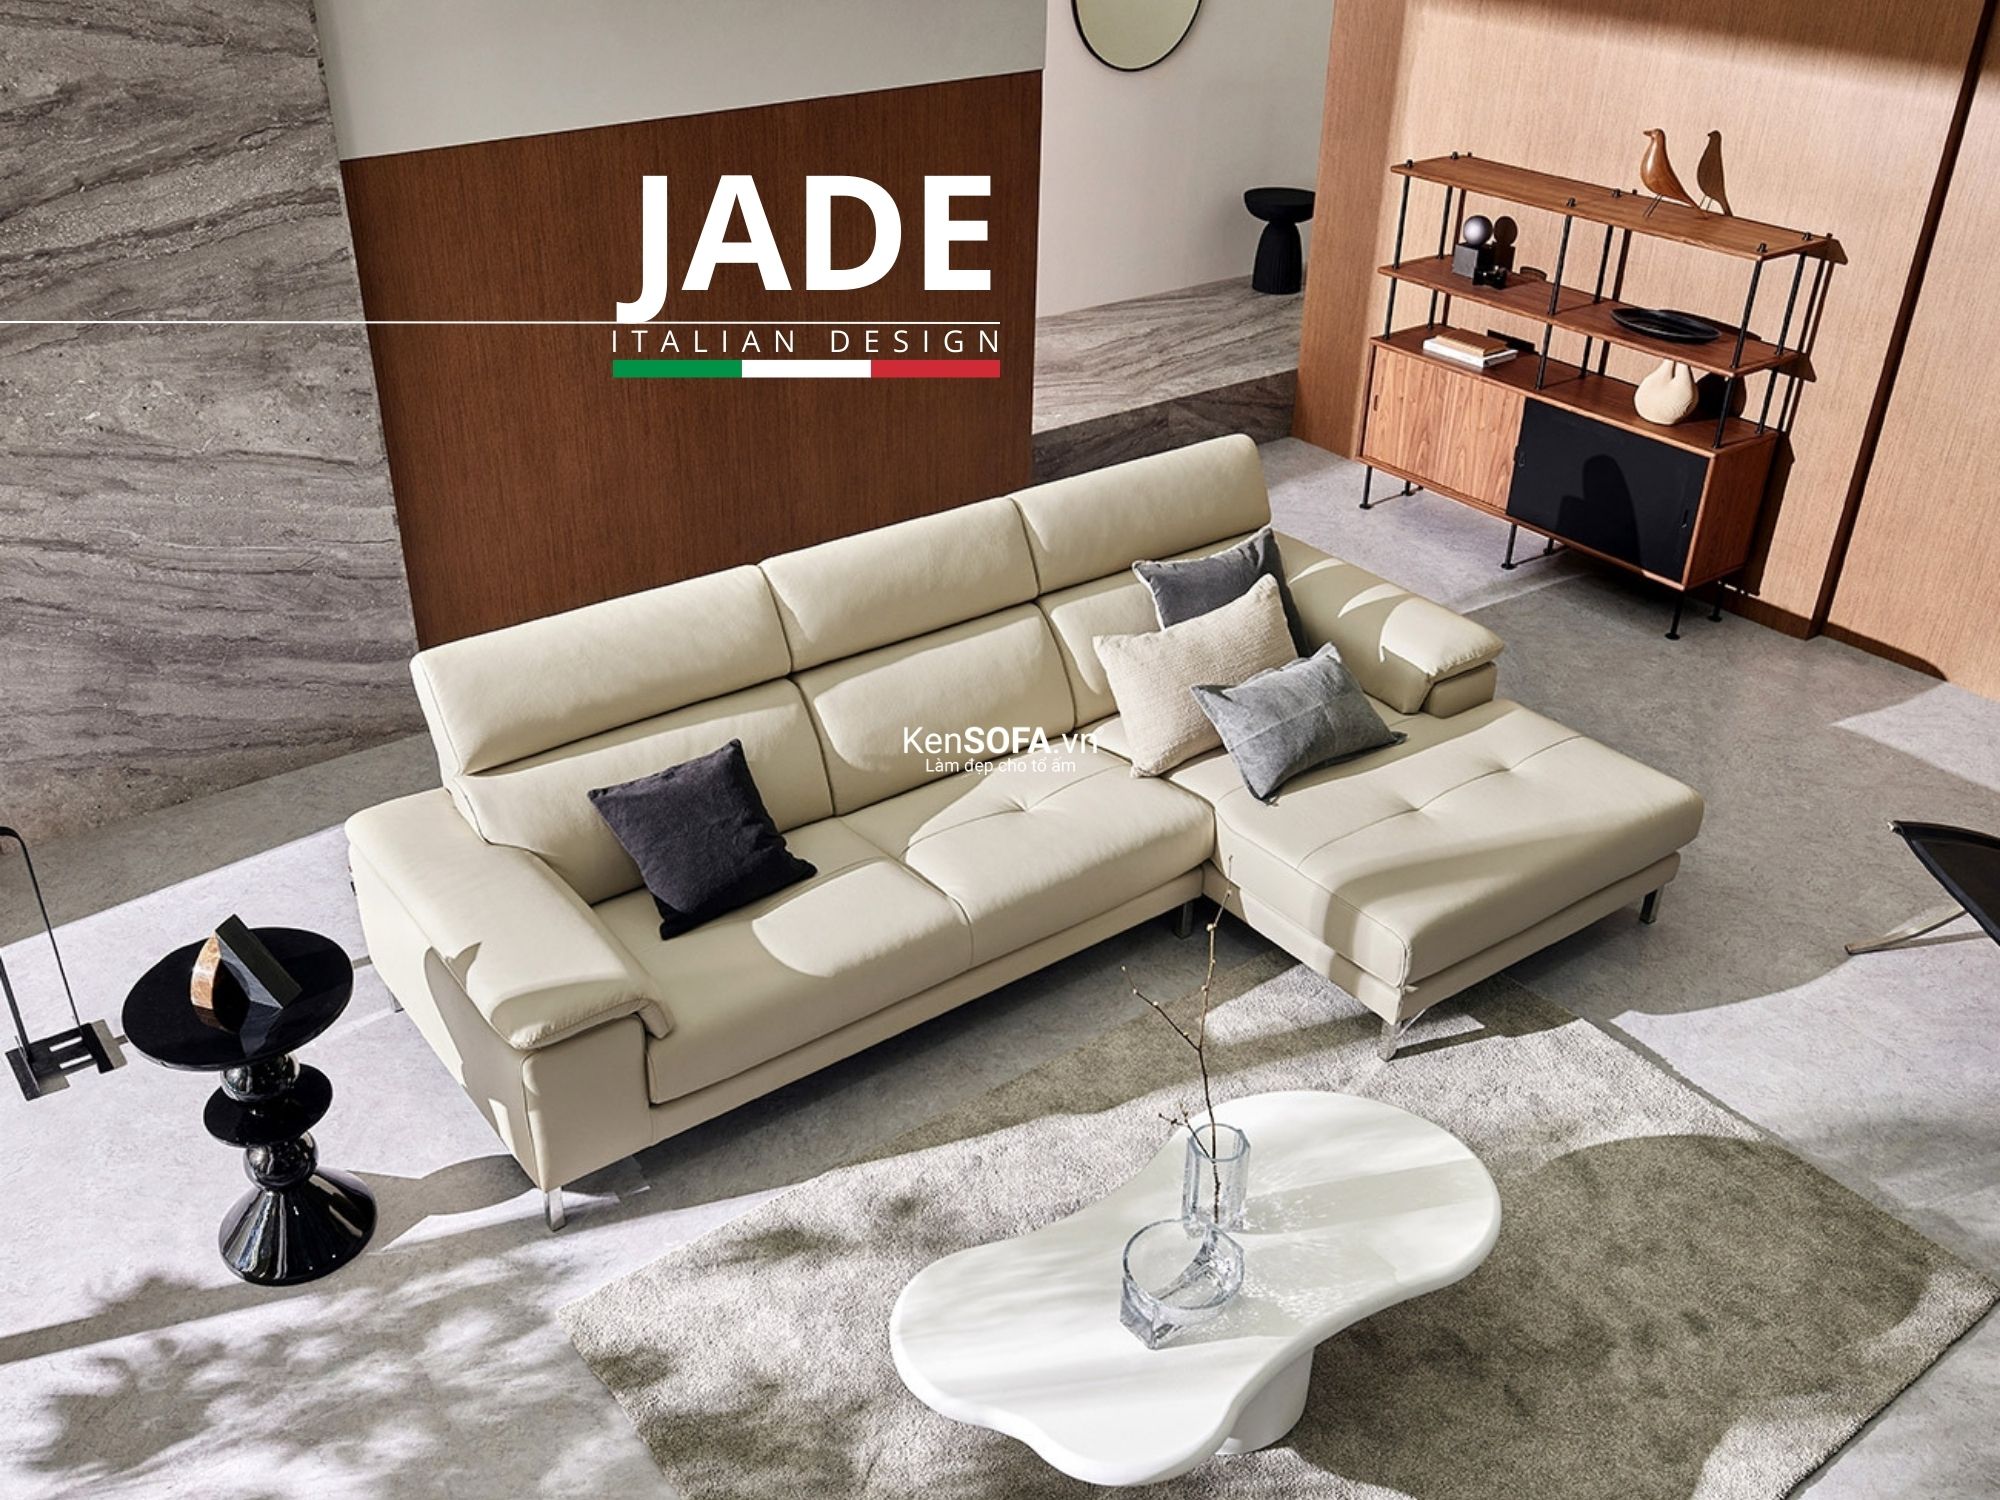 Sofa góc da cao cấp CC44 Jade da Hàn Quốc nhập khẩu